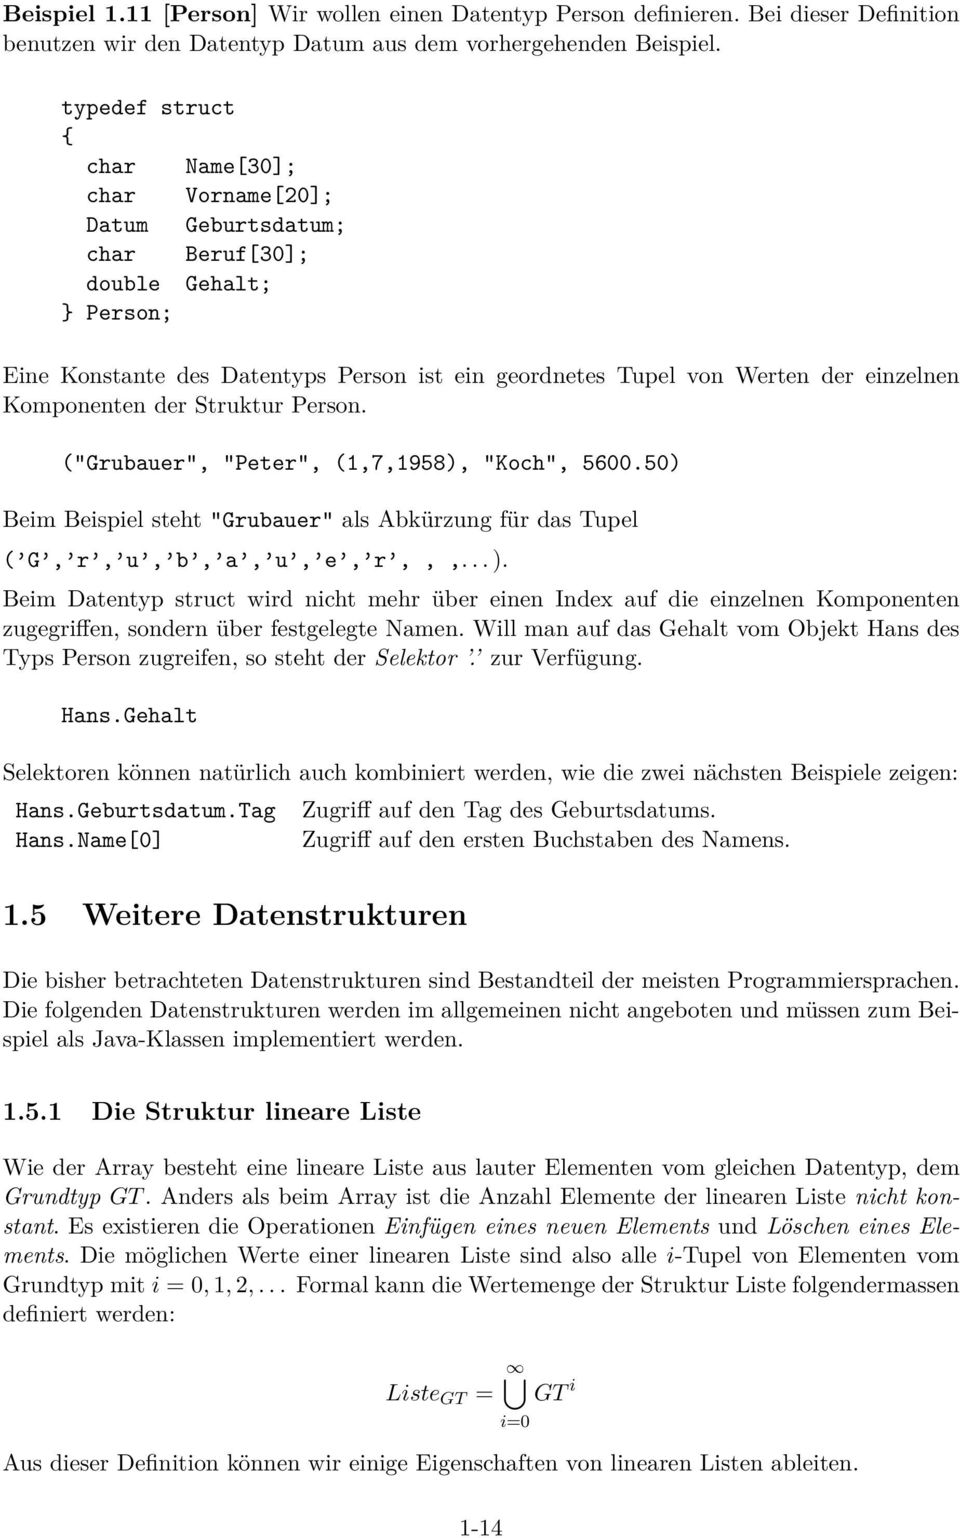 Komponenten der Struktur Person. ("Grubauer", "Peter", (1,7,1958), "Koch", 5600.50) Beim Beispiel steht "Grubauer" als Abkürzung für das Tupel ( G, r, u, b, a, u, e, r,,,... ).